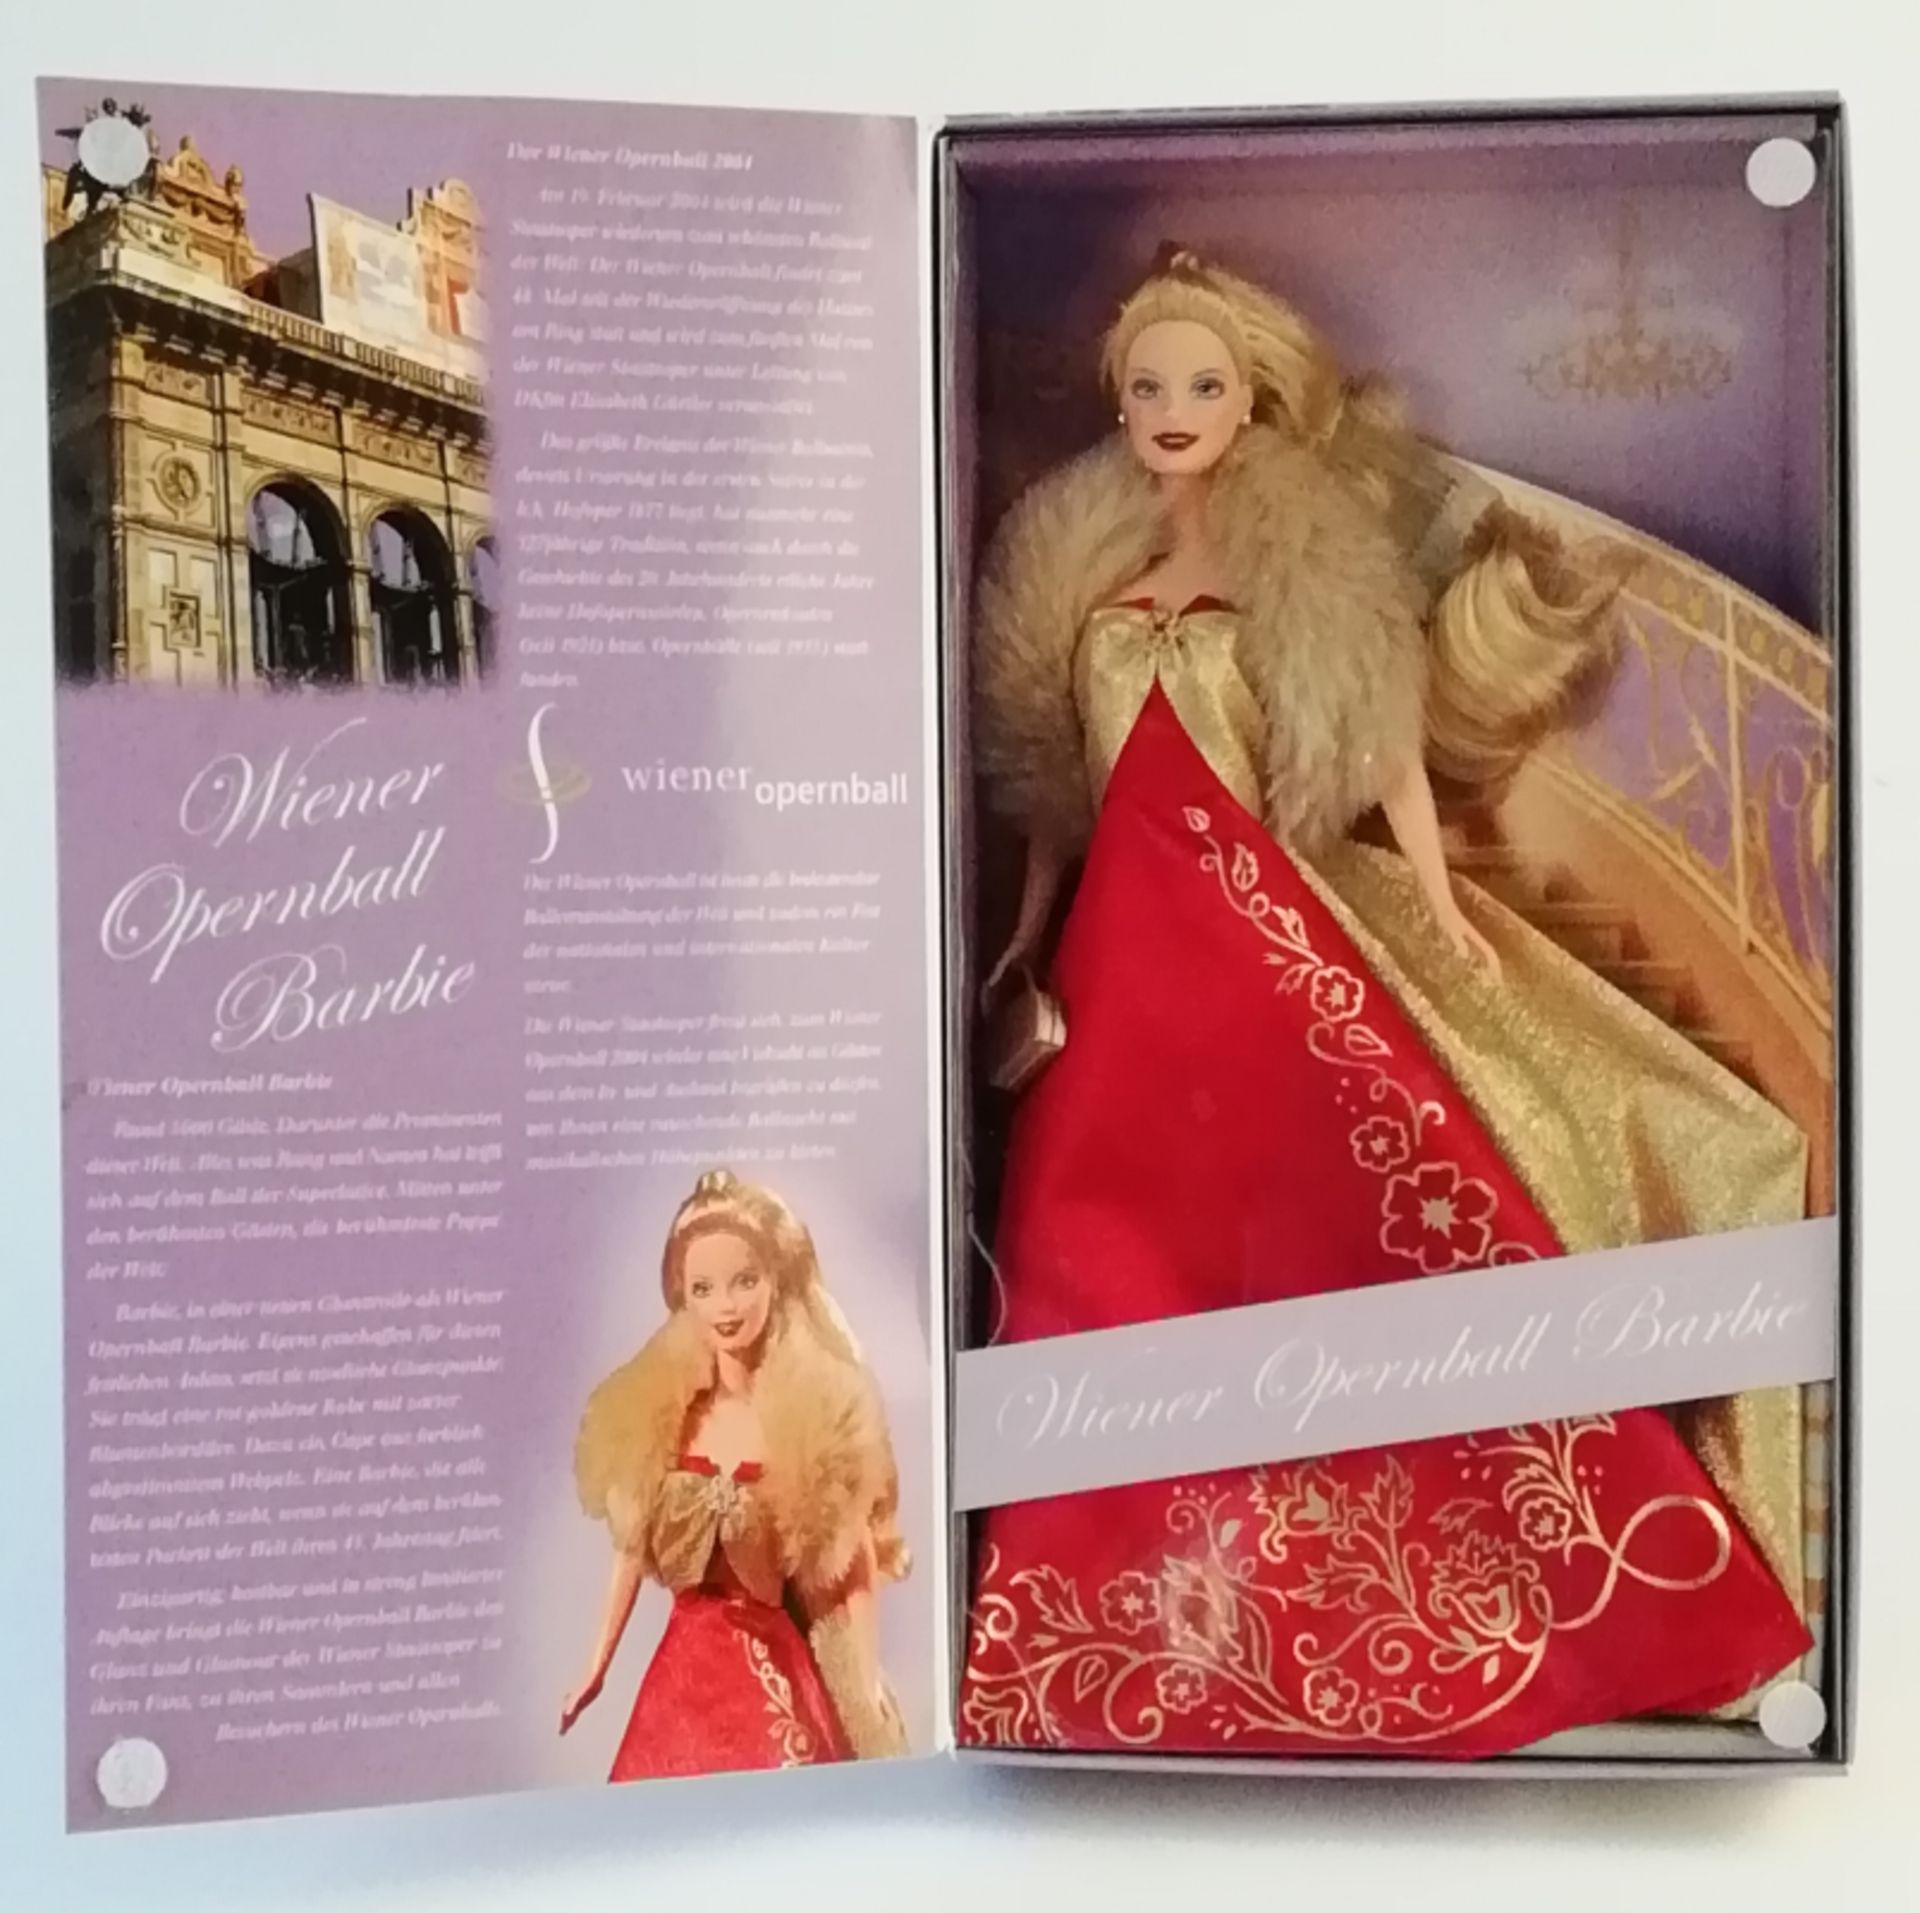 Wiener Opernball Barbie - Bild 2 aus 2